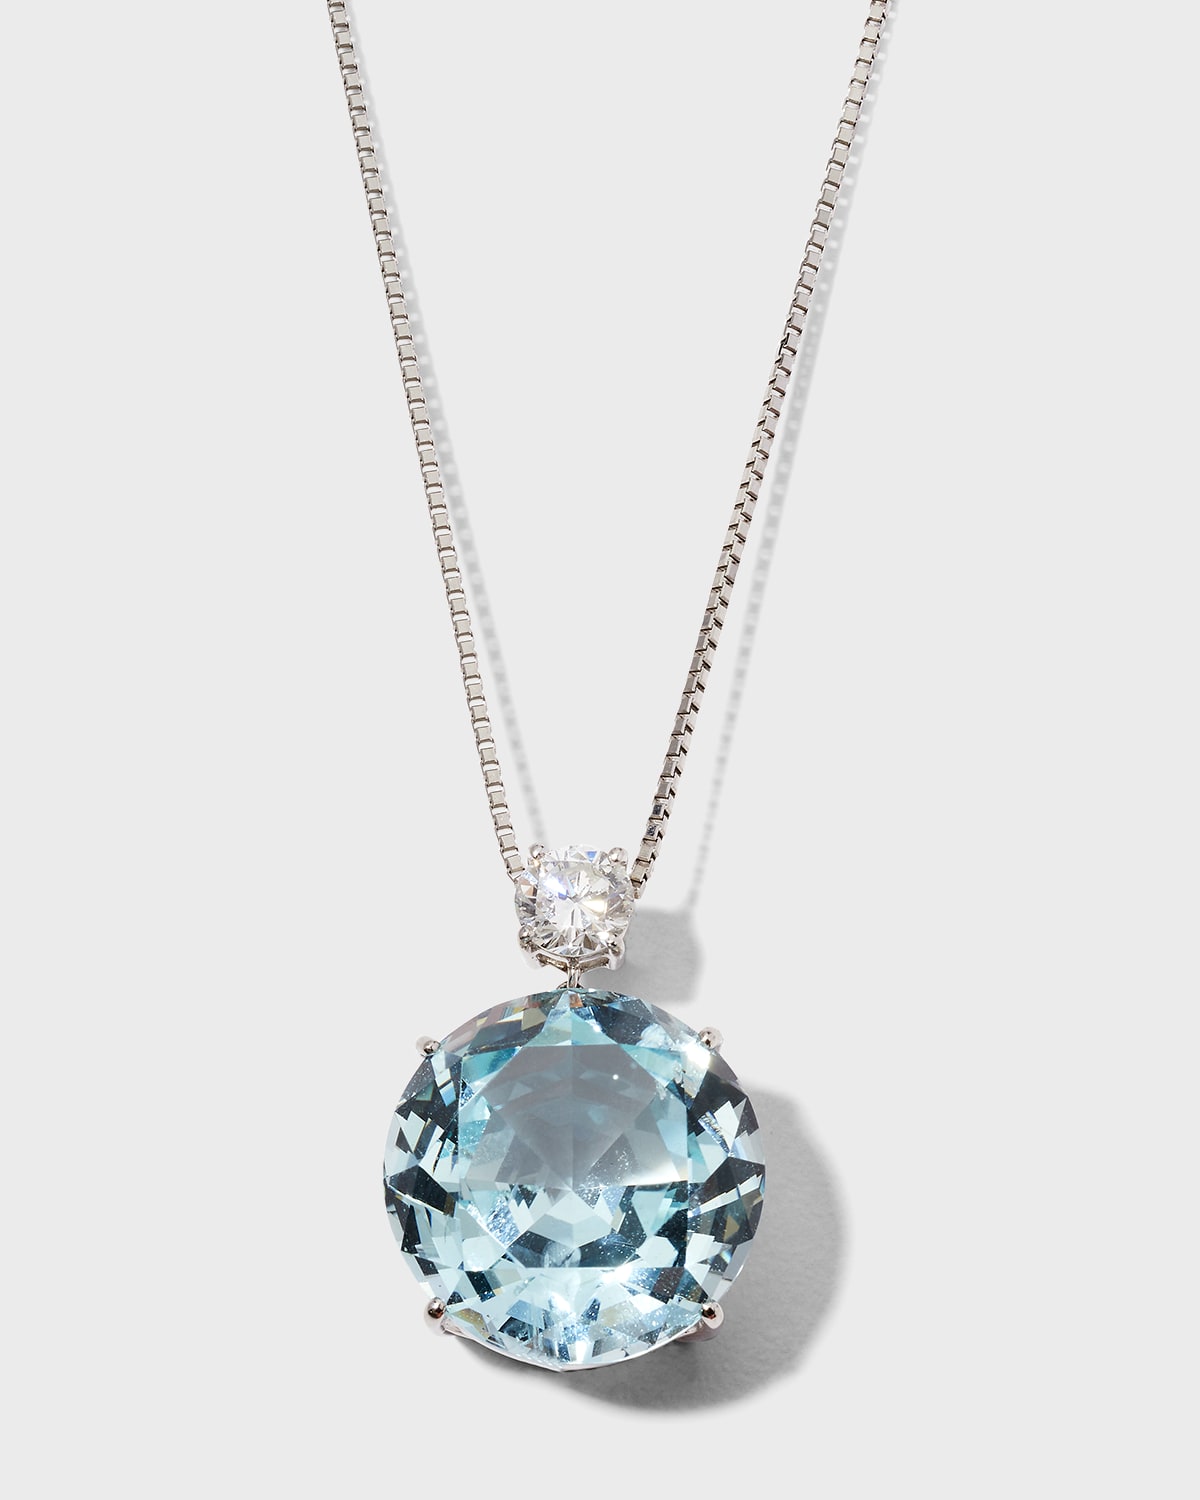 Alexander Laut Platinum Chain with Aquamarine and Diamond Pendant